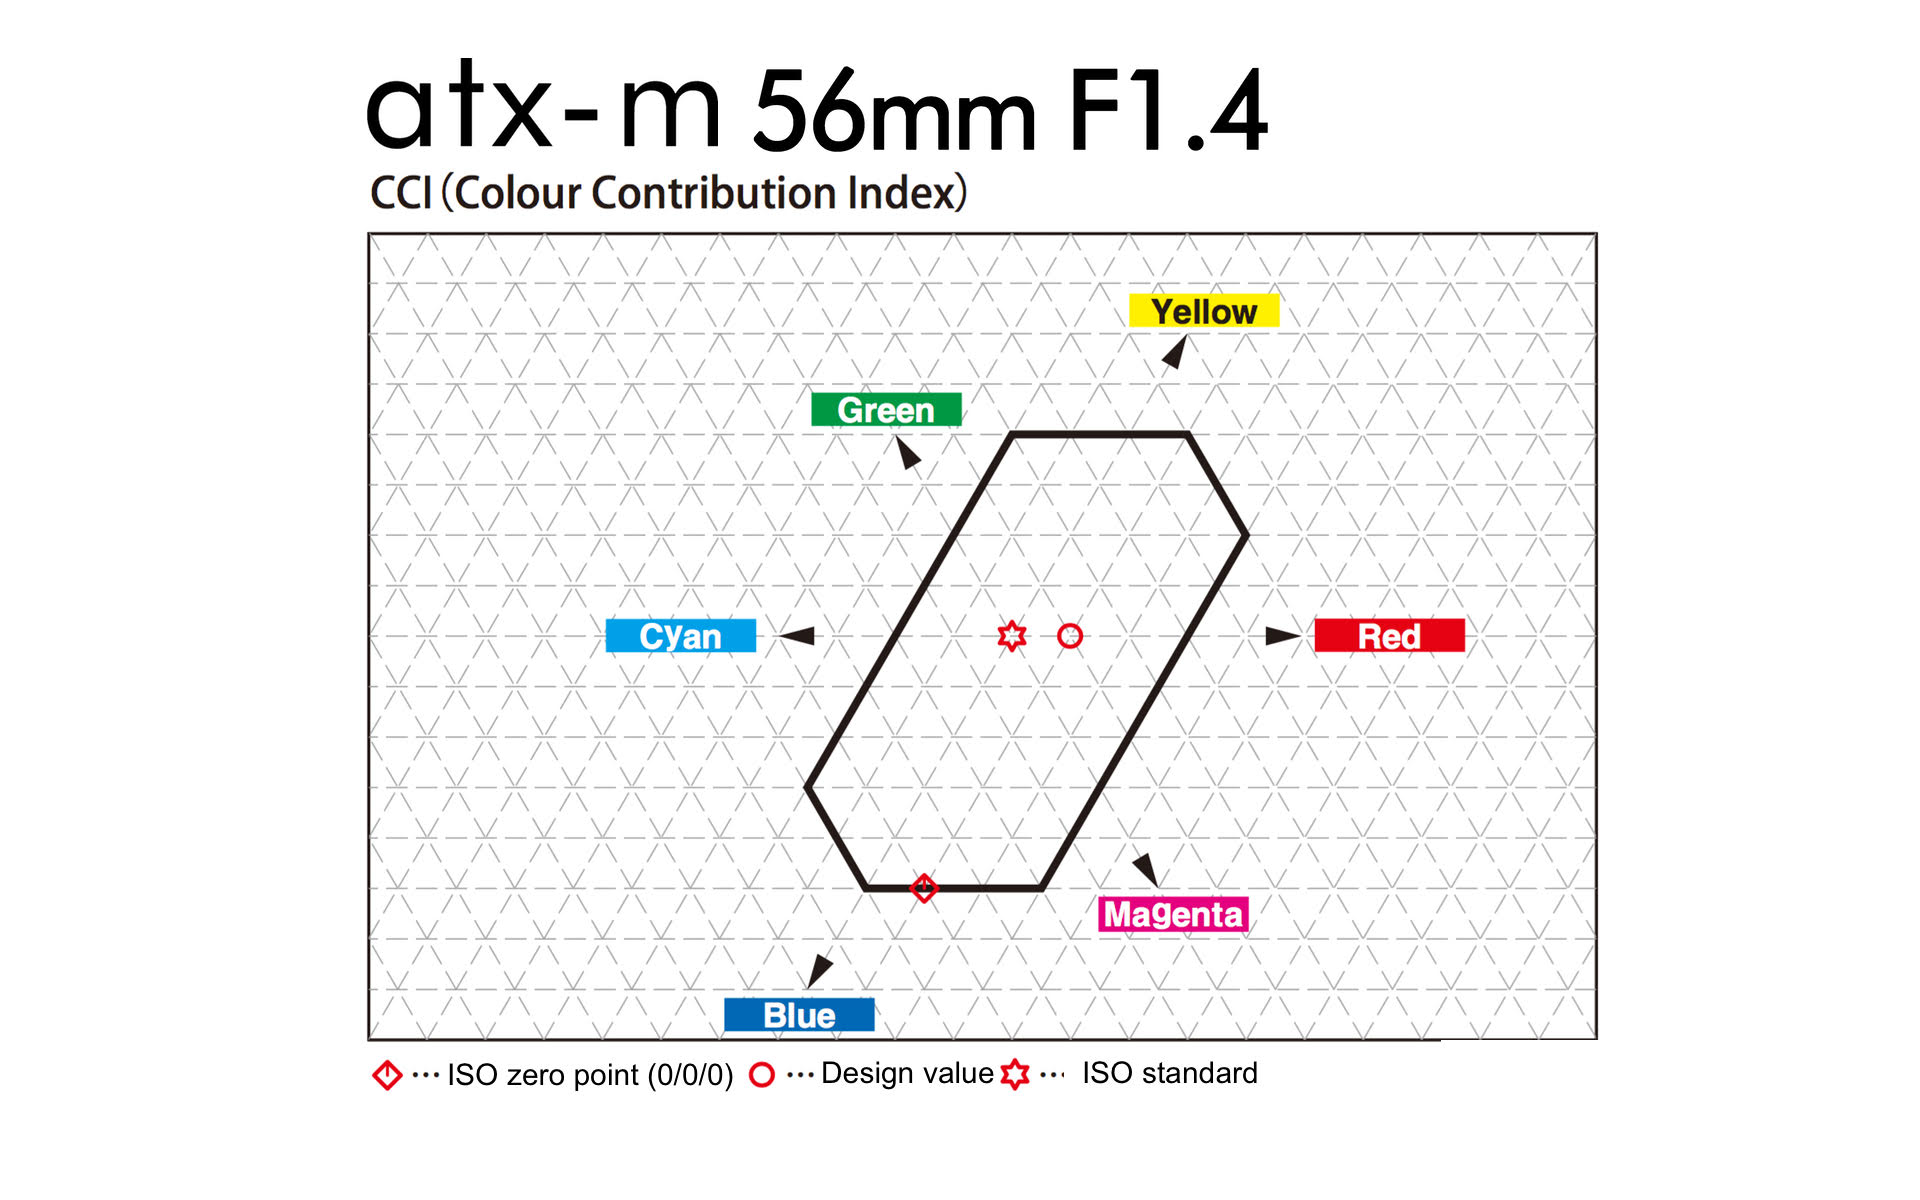 Tokina atx-m 56mm F1.4 X Lens Review